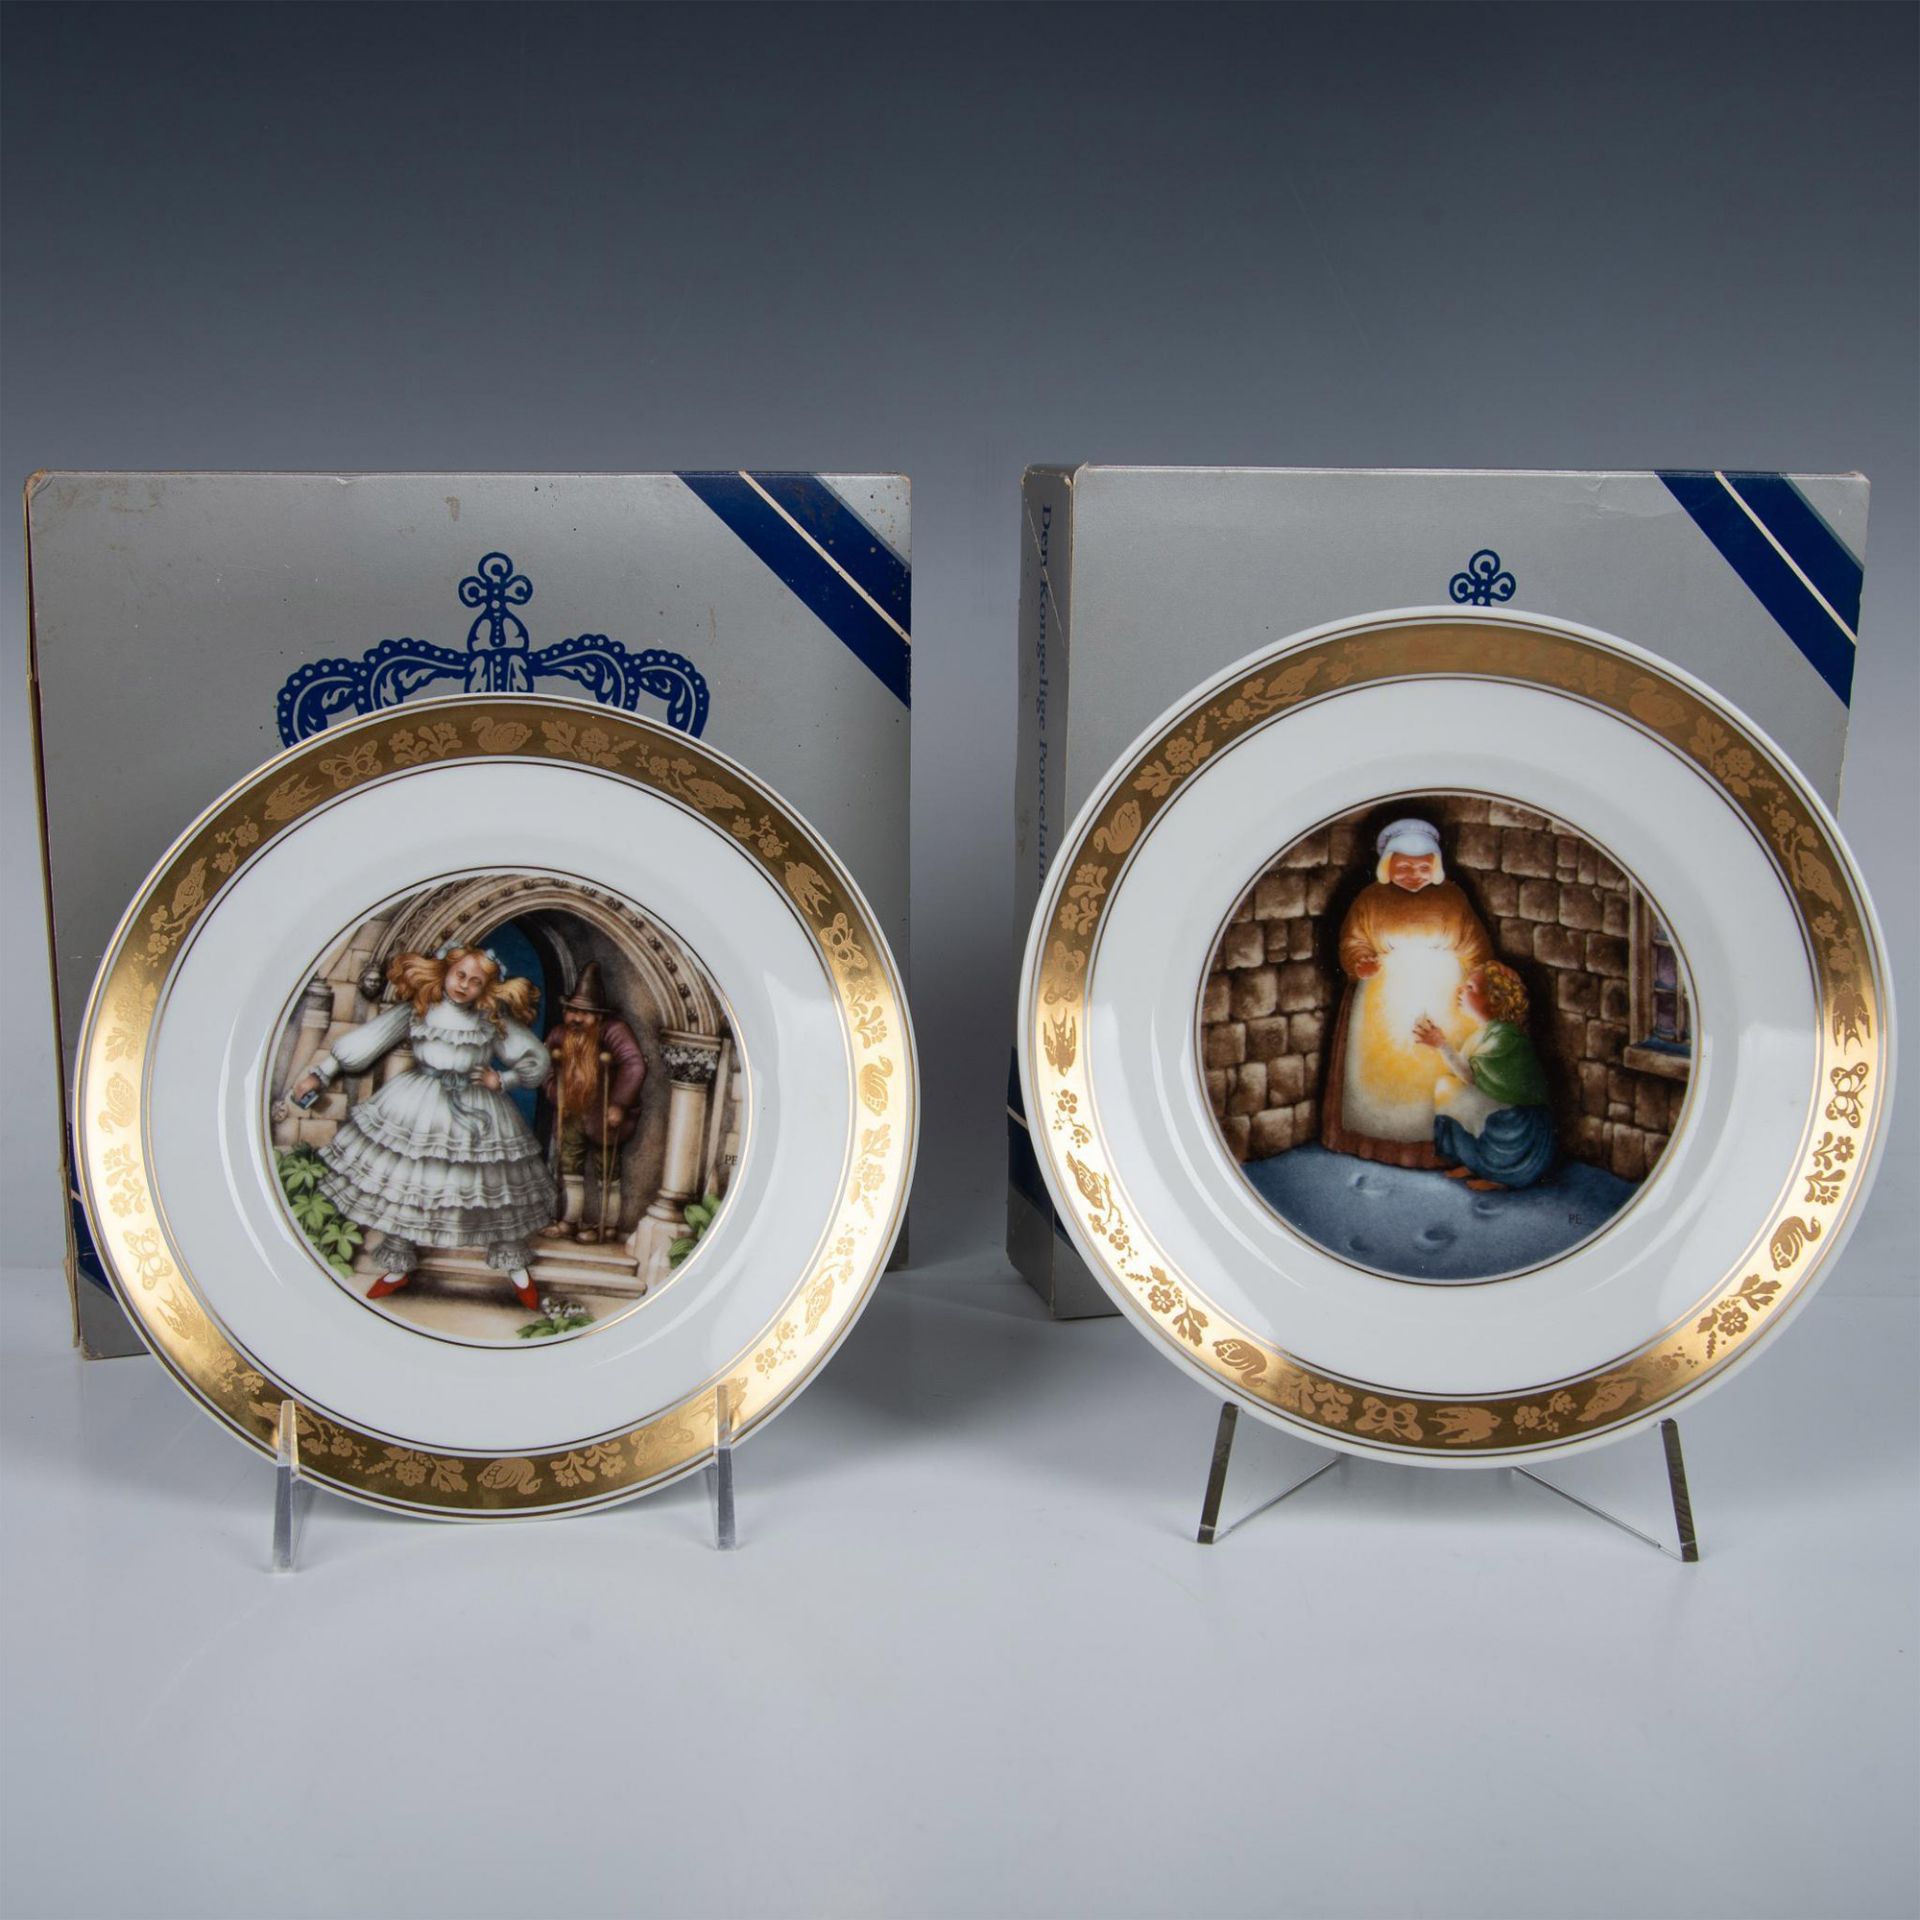 4pc Porcelain Plates, Royal Copenhagen + Royal Doulton - Image 2 of 6